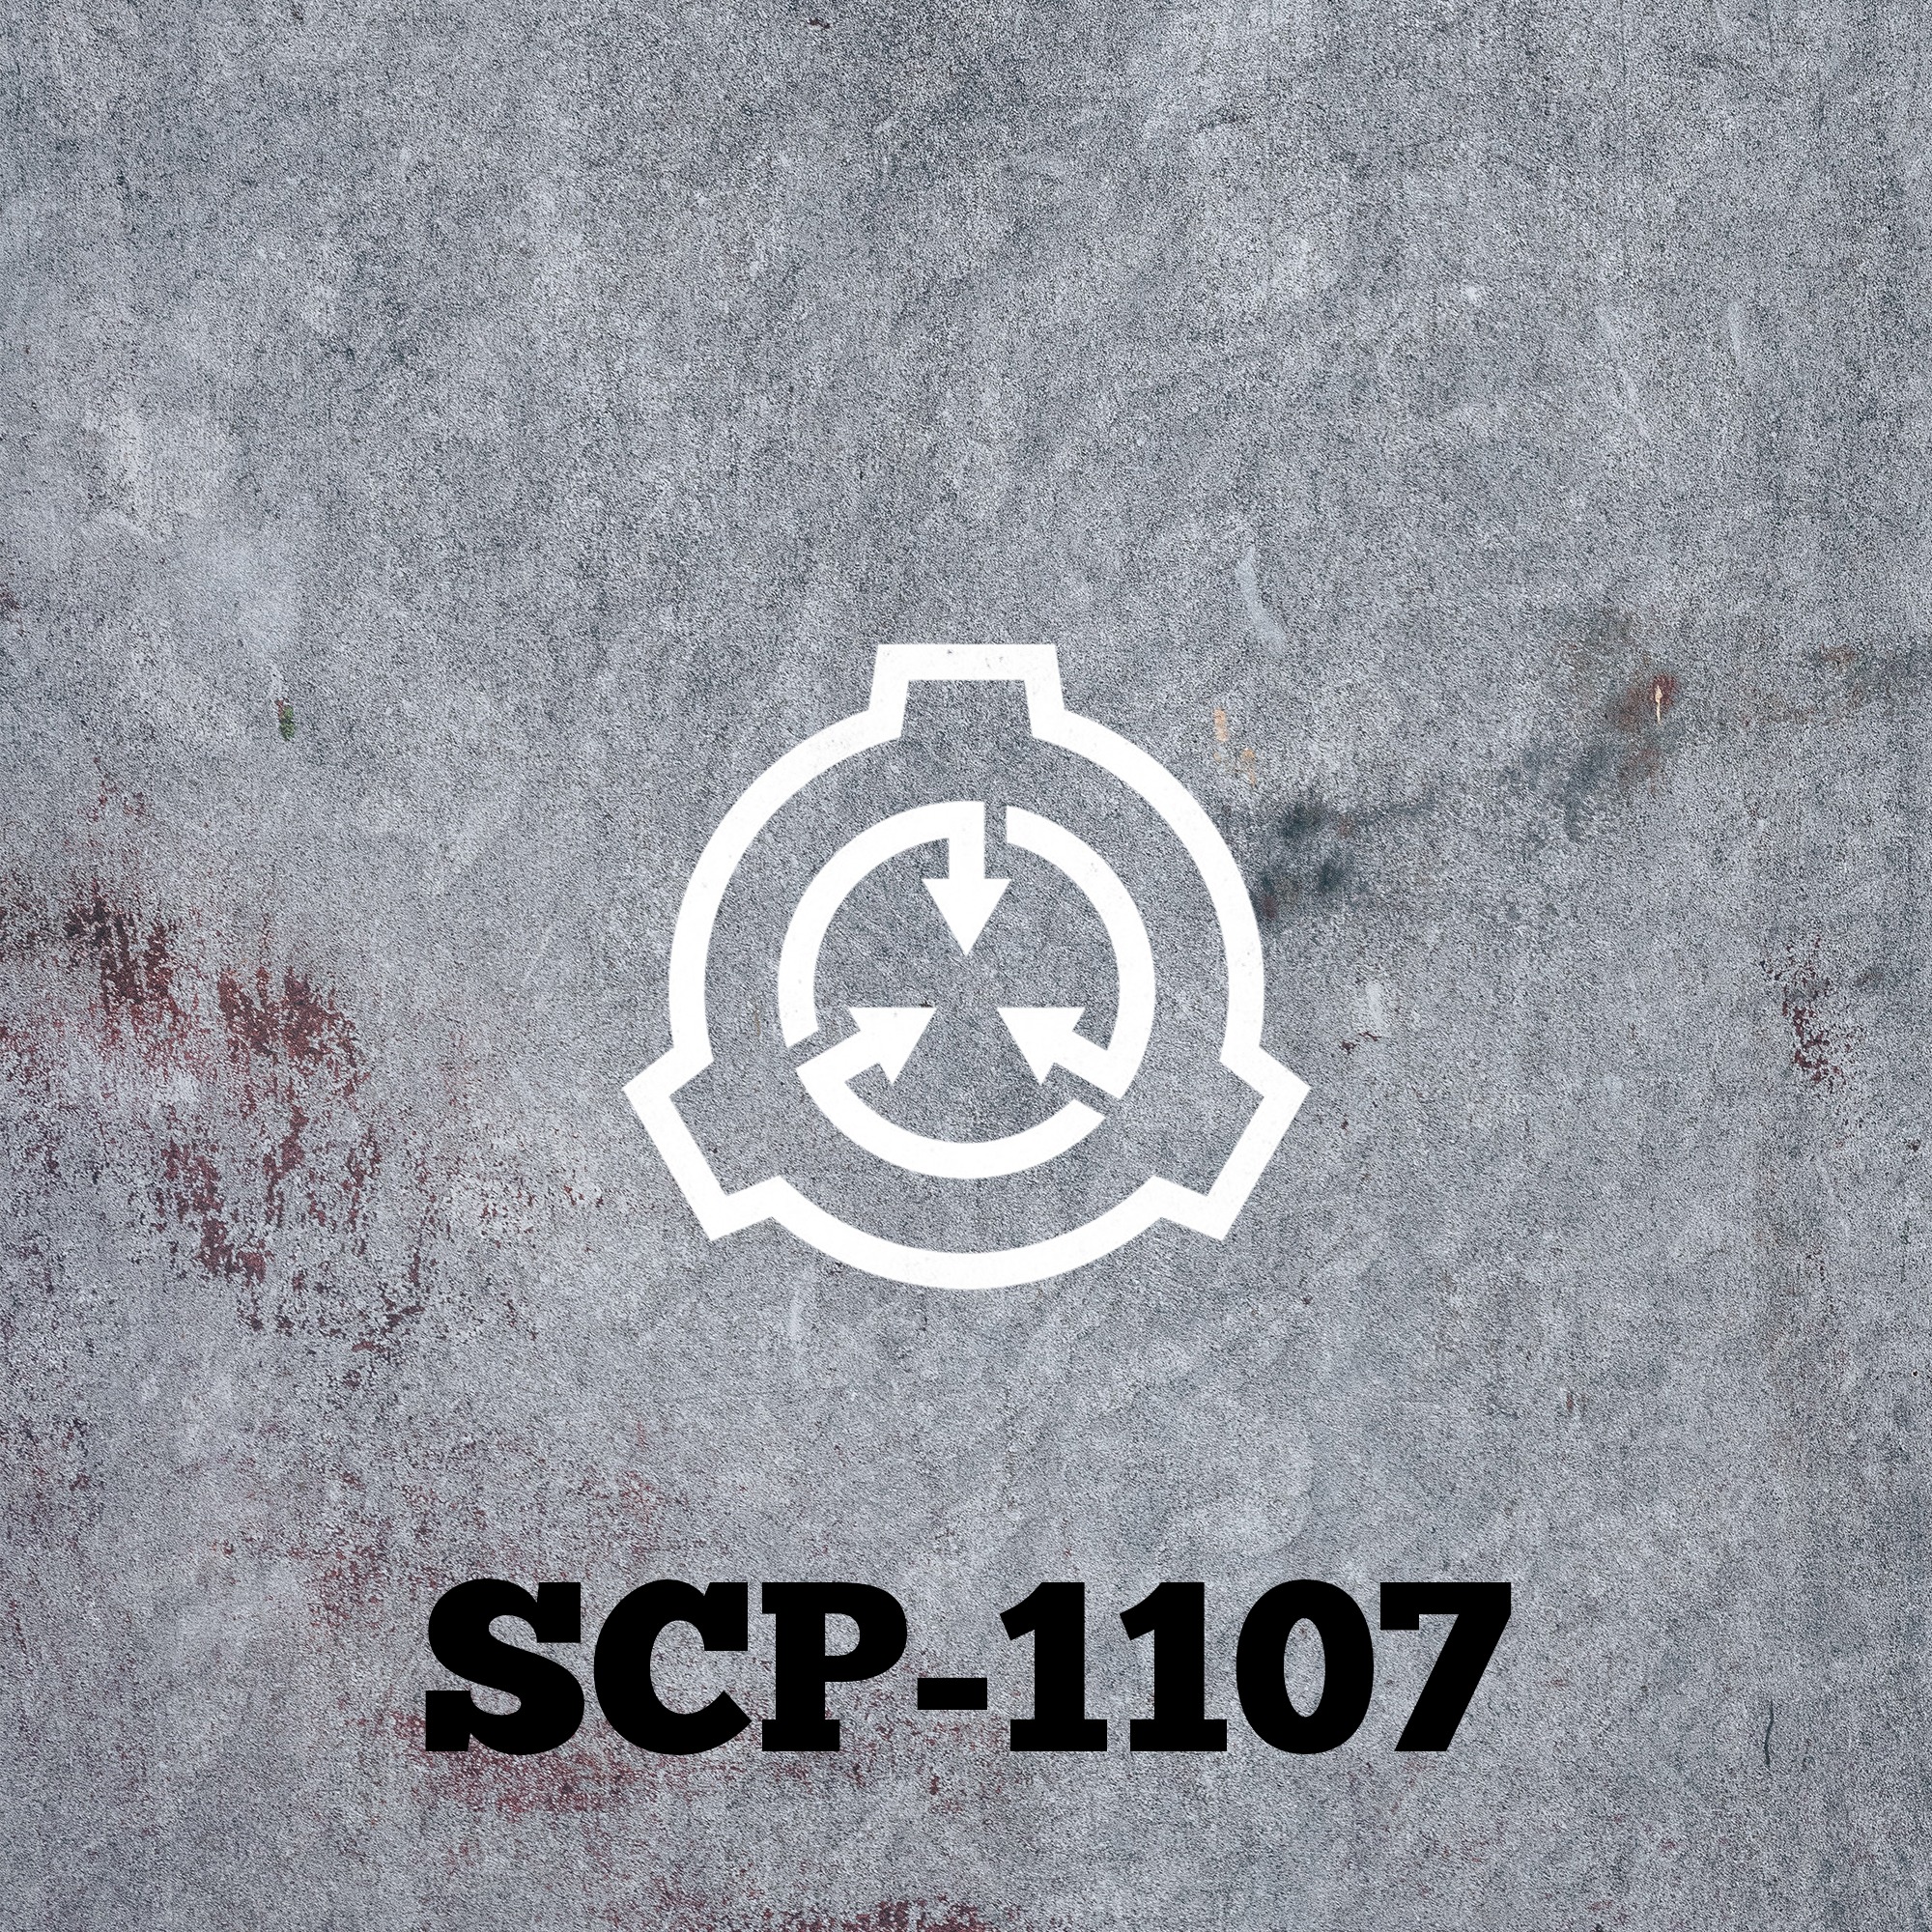 SCP-1107: A Signal